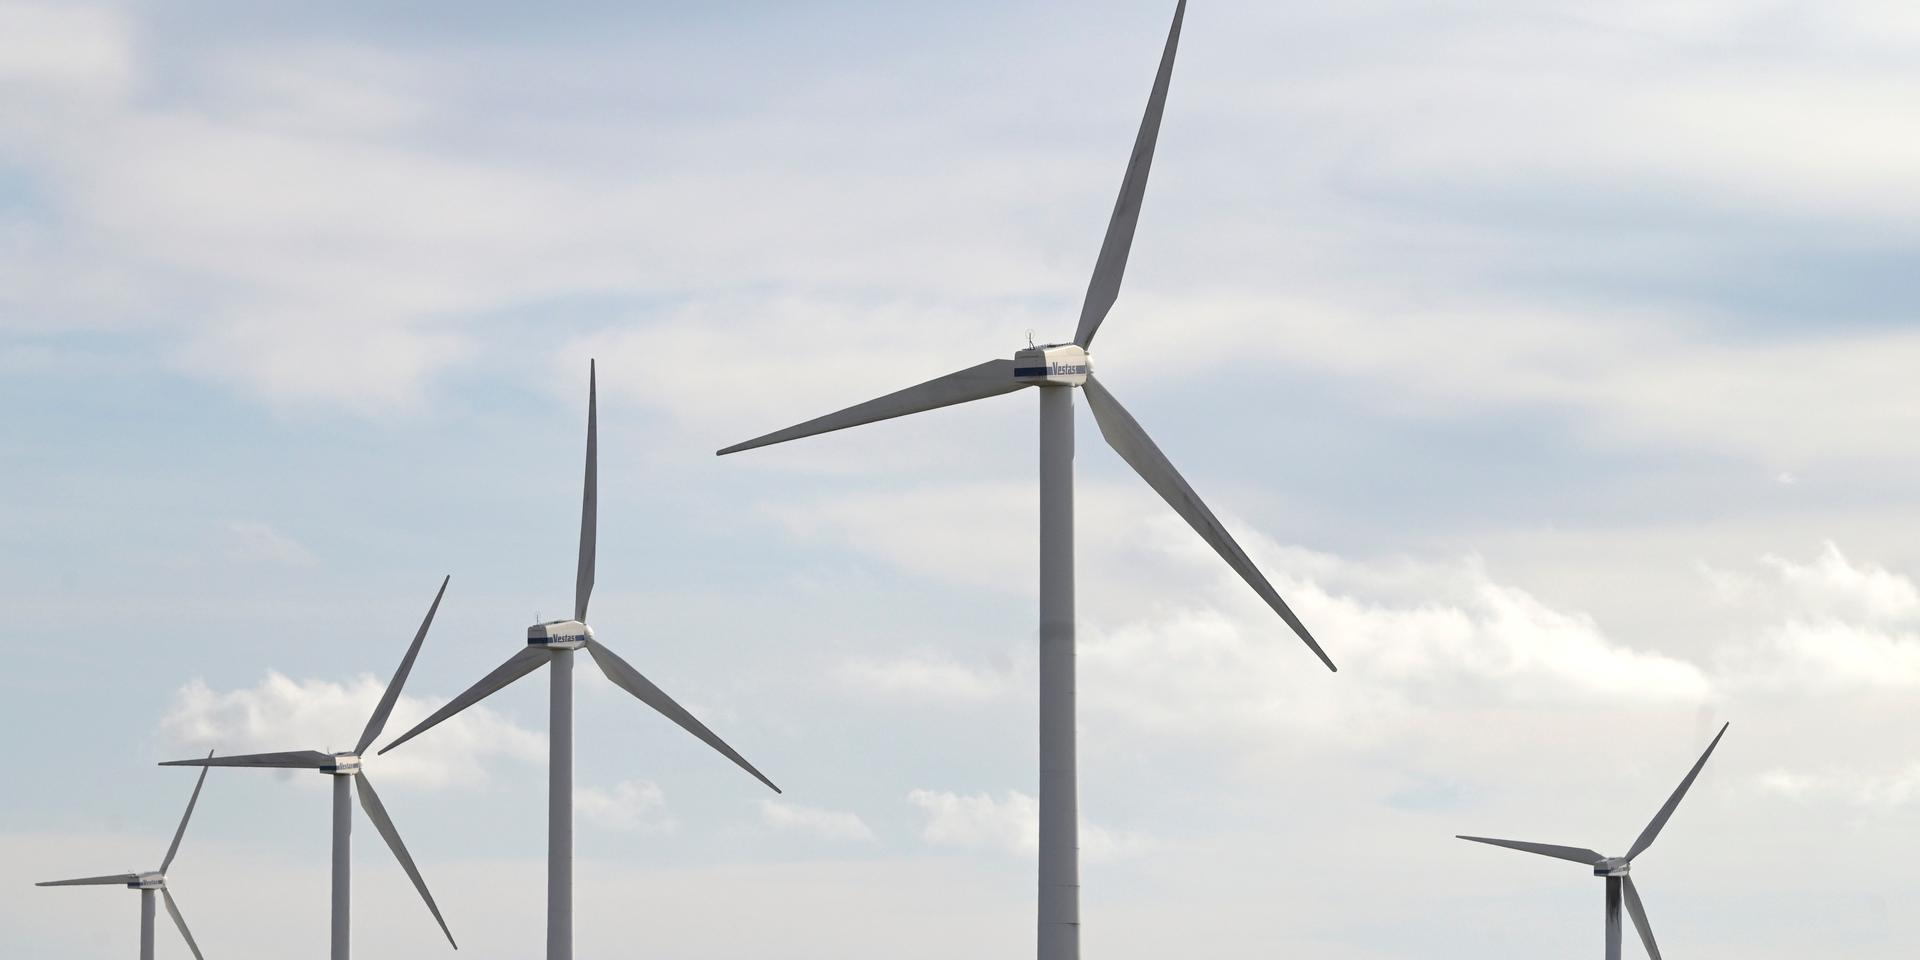 ”I en debatt nyligen framhöll Svenskt Näringsliv att vindkraften som är den billigaste energin måste byggas ut snabbare.”